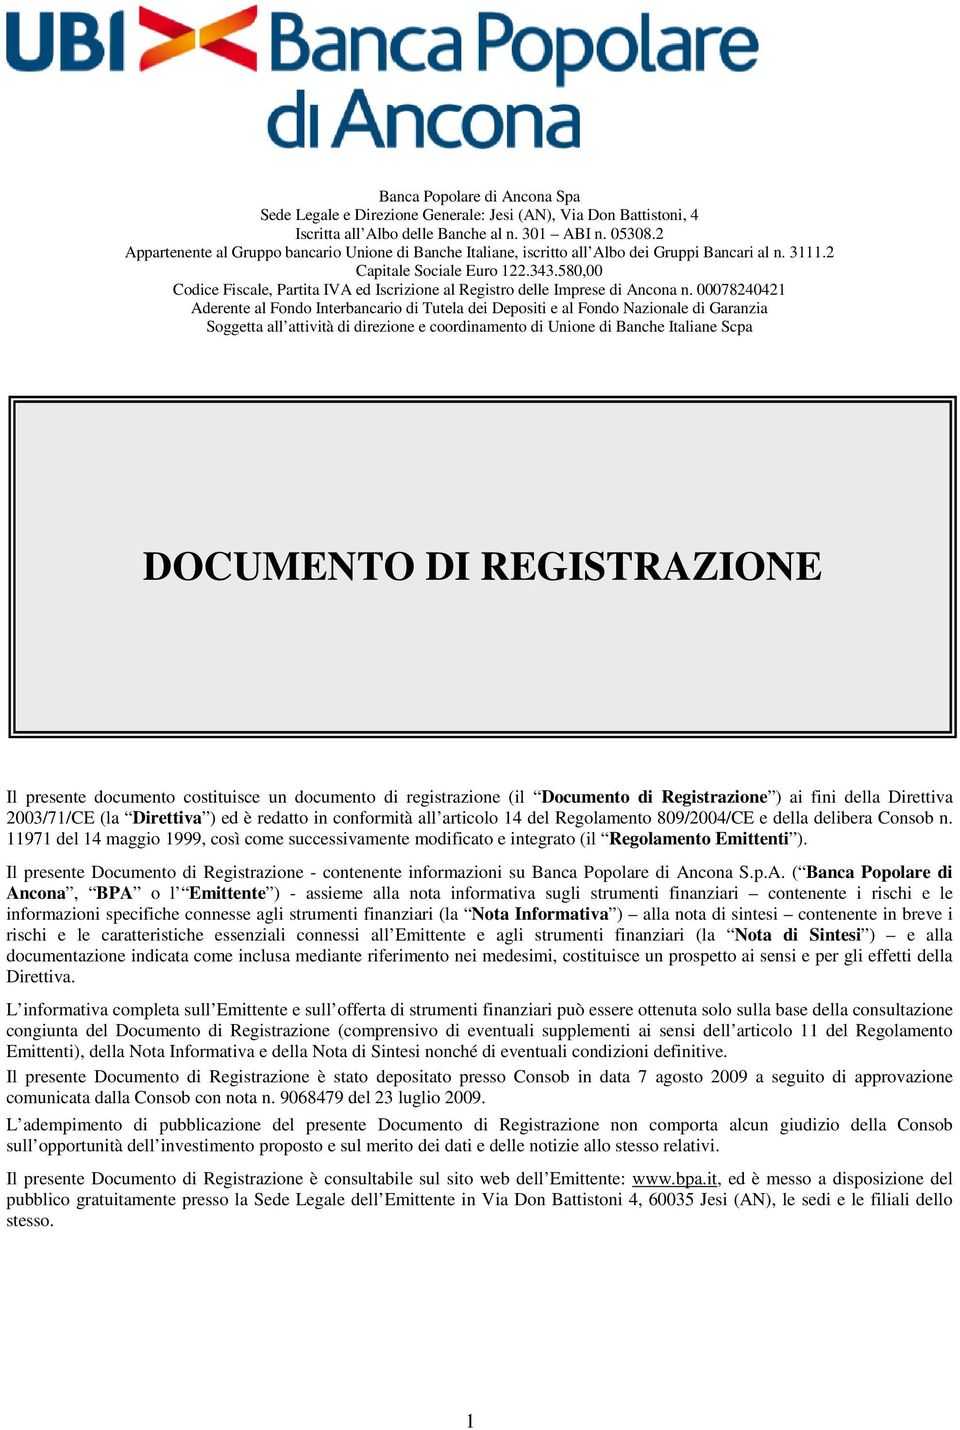 580,00 Codice Fiscale, Partita IVA ed Iscrizione al Registro delle Imprese di Ancona n.